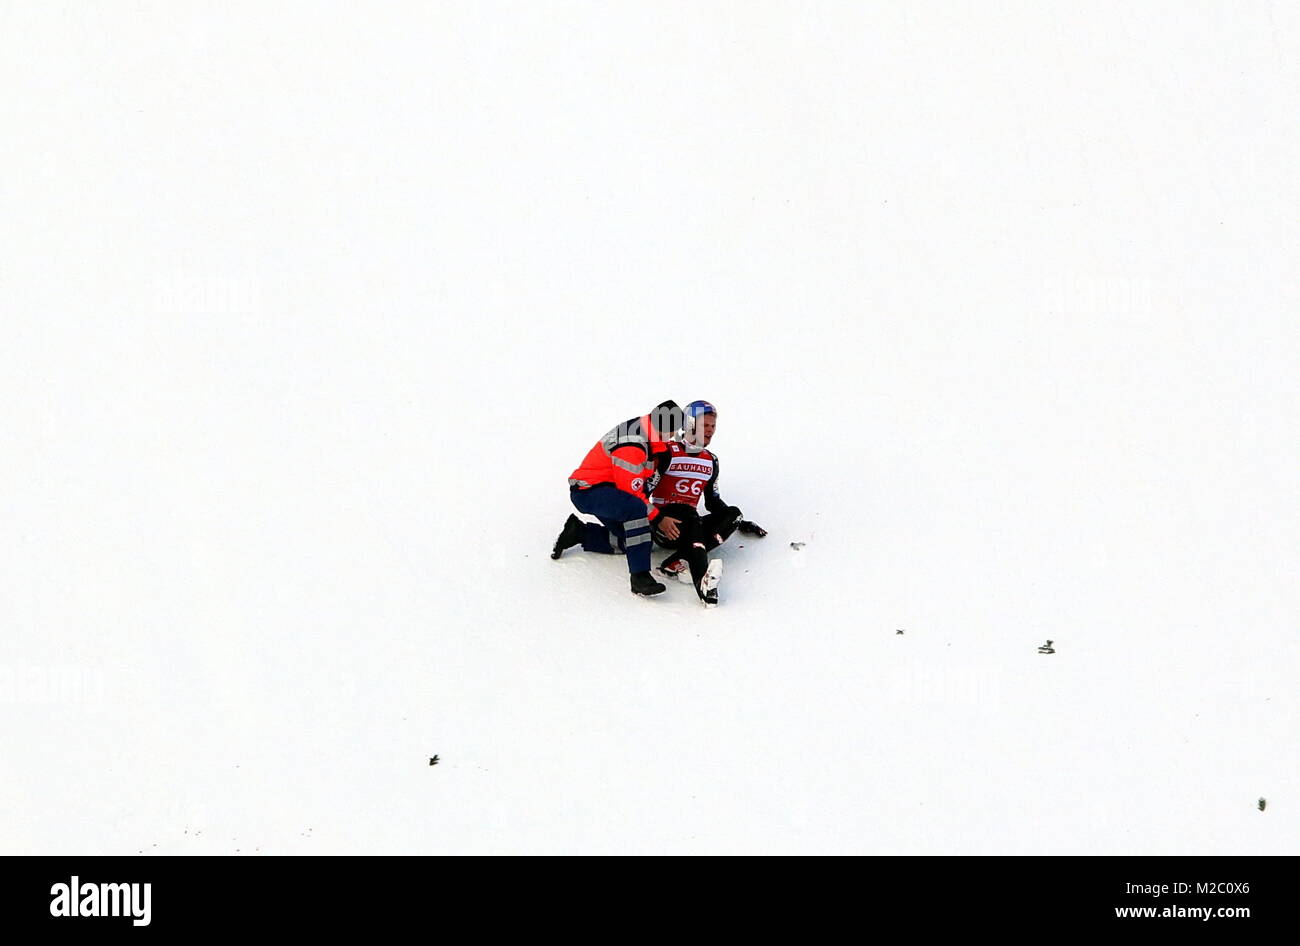 Erste Hilfe für den schwer gestürzten österreichischen Skispringer Thomas Morgenstern - Weltcup Skispringen Titisee-Neustadt -  2. Wettkampf 15.12.13 Stock Photo